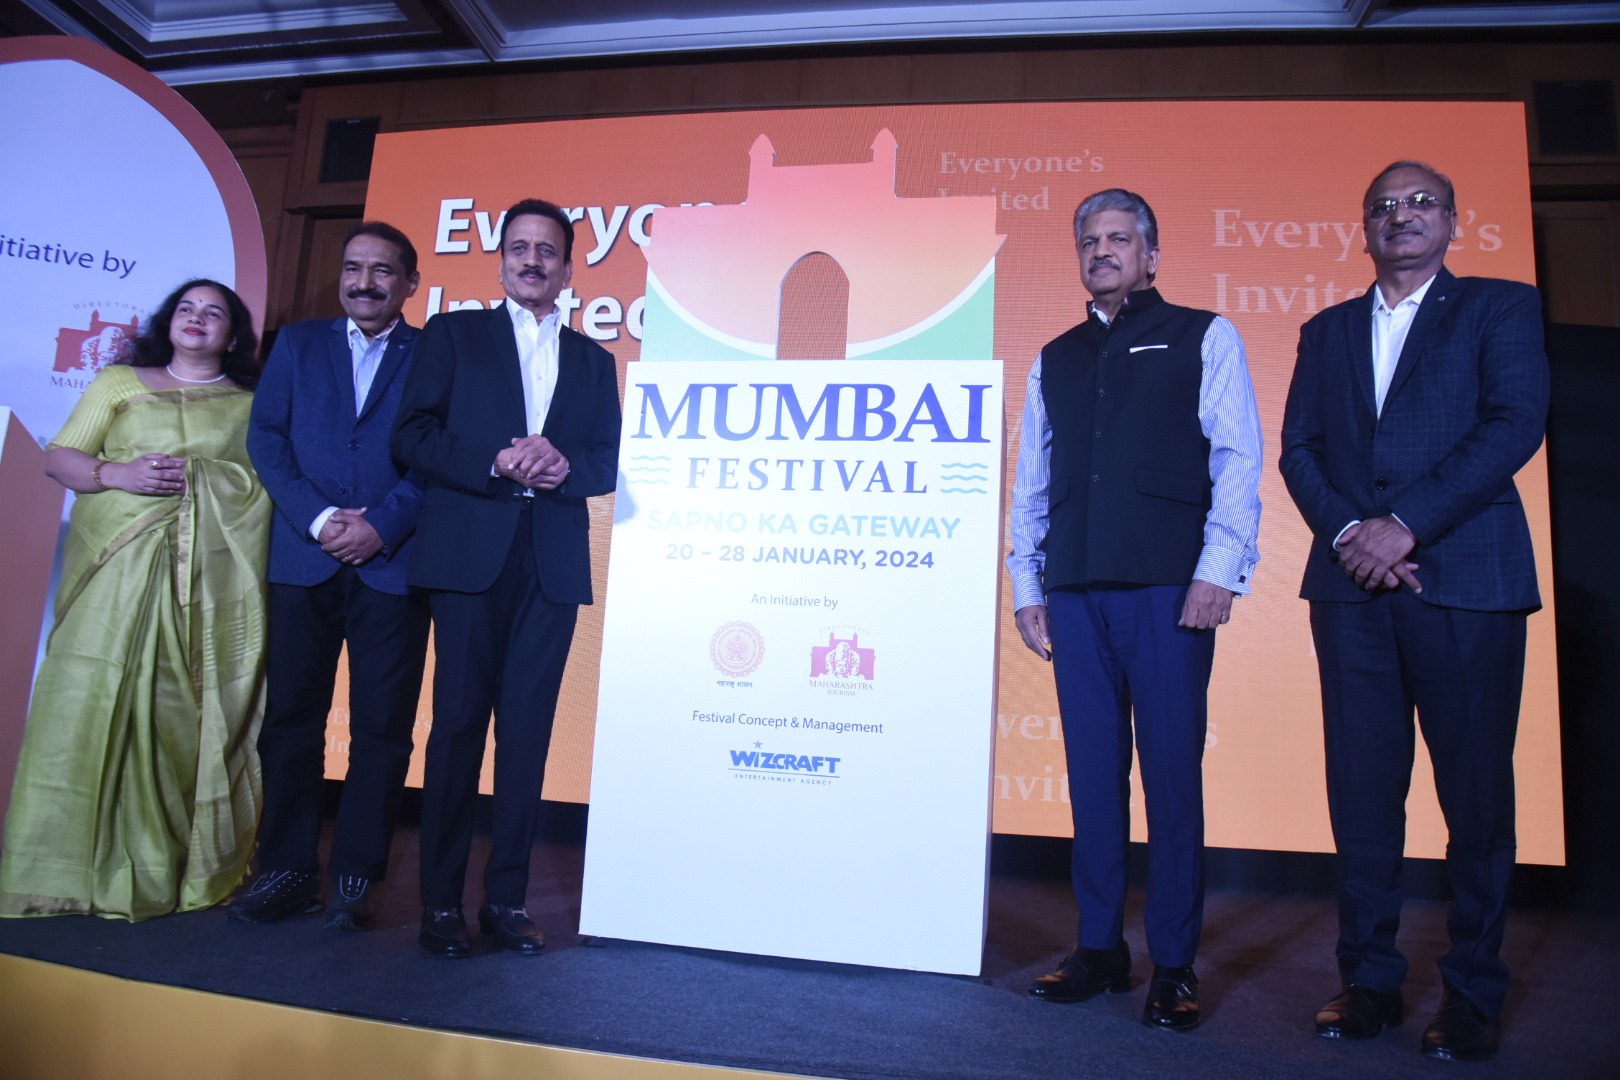 ‘मुंबई फेस्टिव्हल २०२४’ मध्ये सर्वांनी सहभागी व्हावे – पर्यटन मंत्री गिरीश महाजन